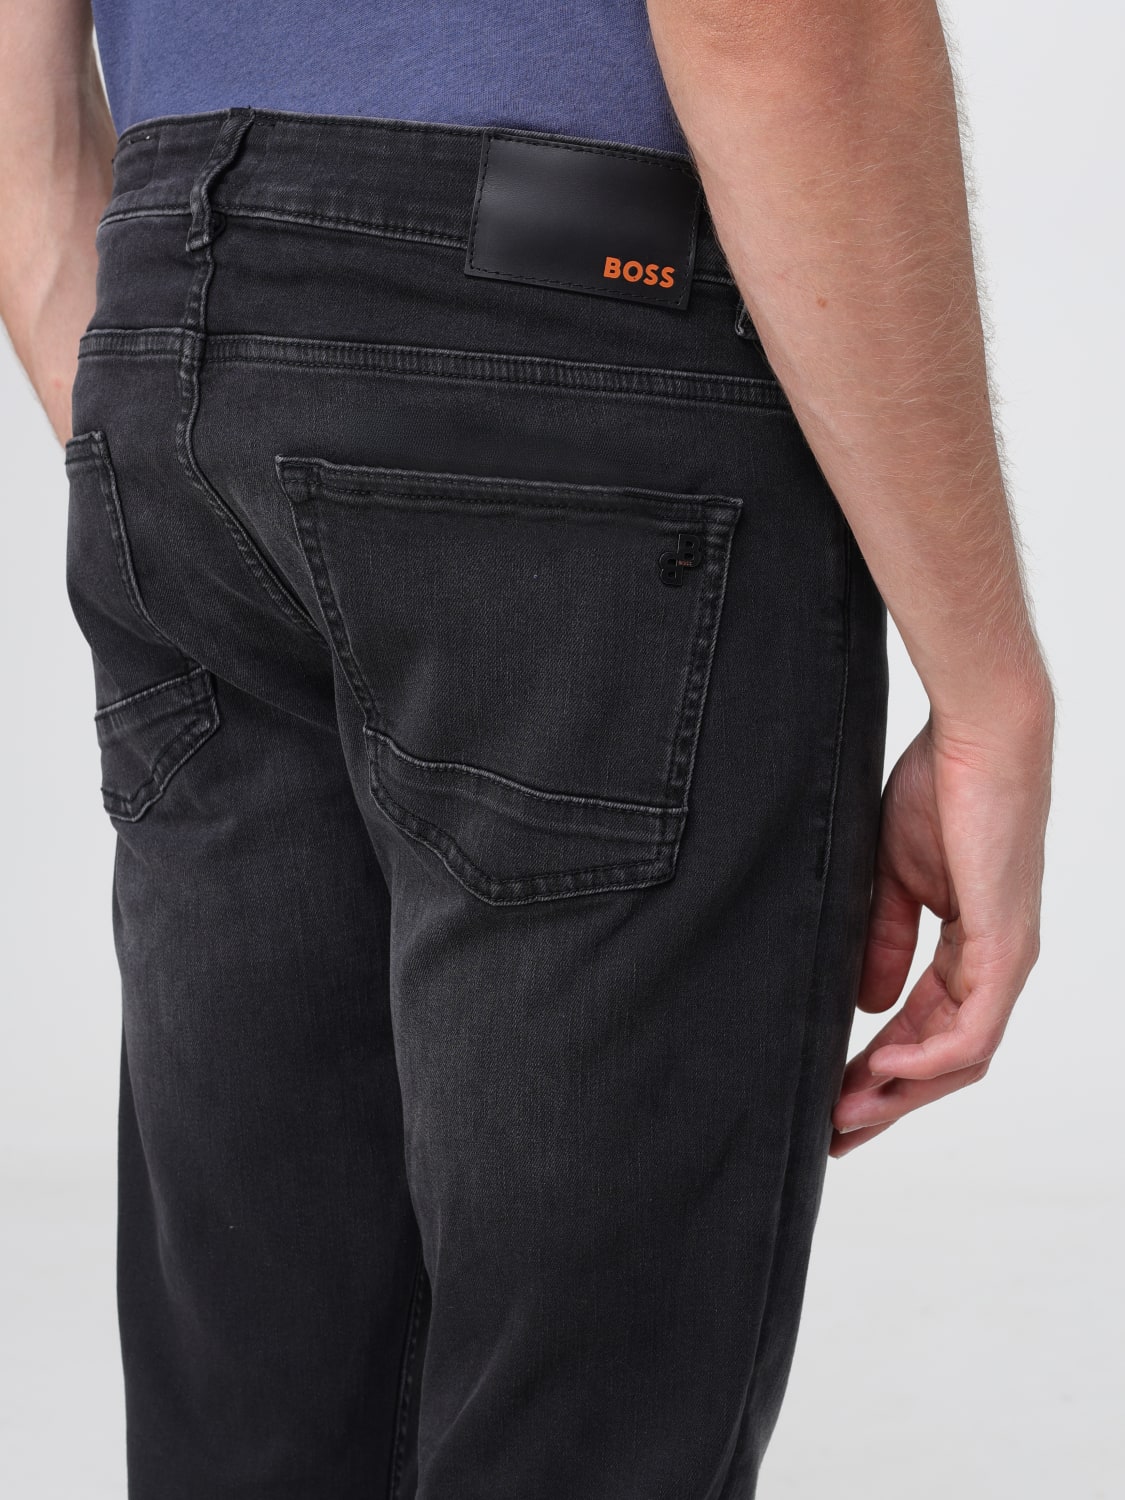 Teknologi kål sende BOSS: jeans for man - Black | Boss jeans 50503434 online at GIGLIO.COM